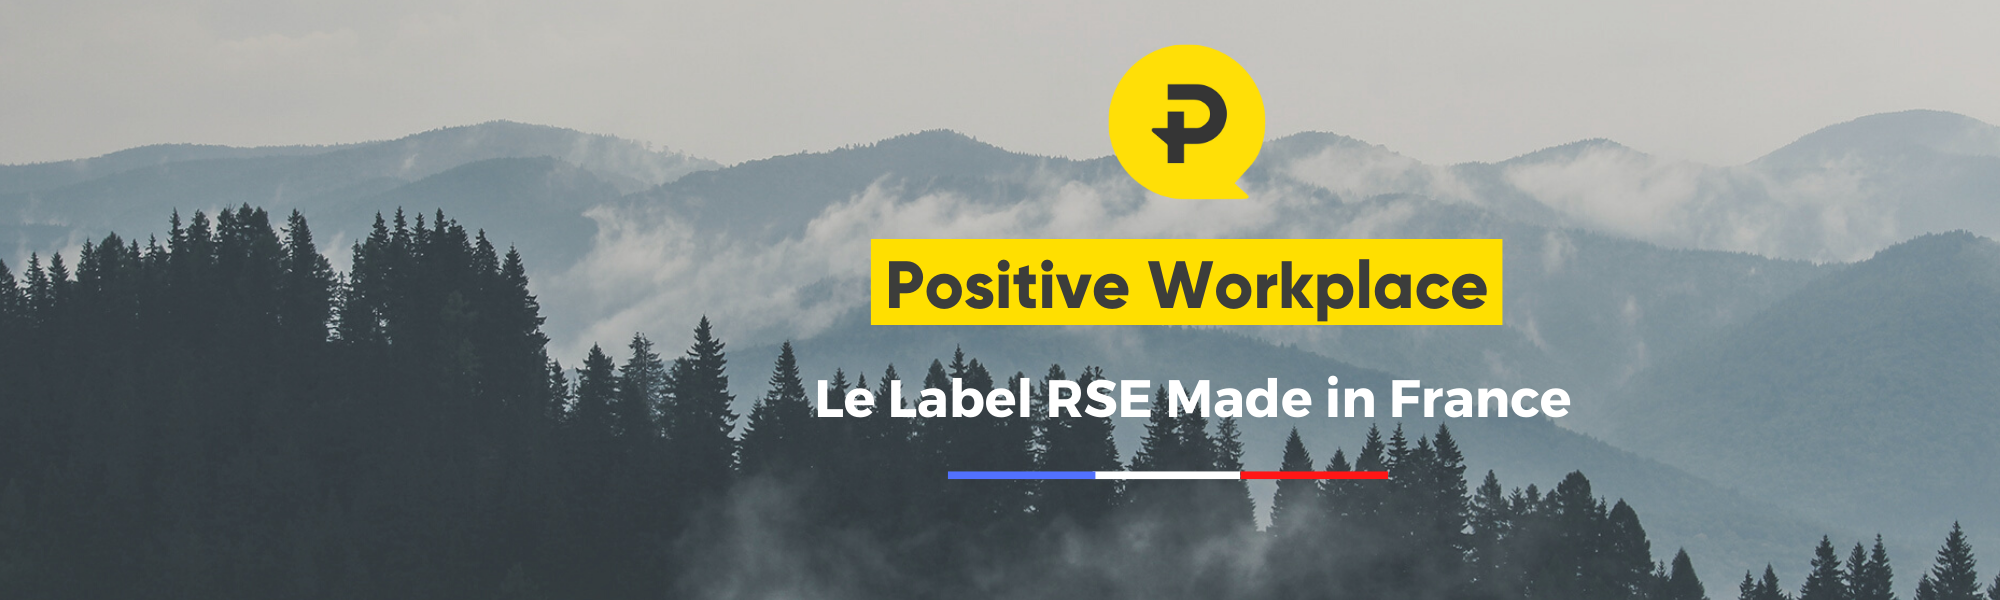 Bannière de Positive Company®, label RSE made in France